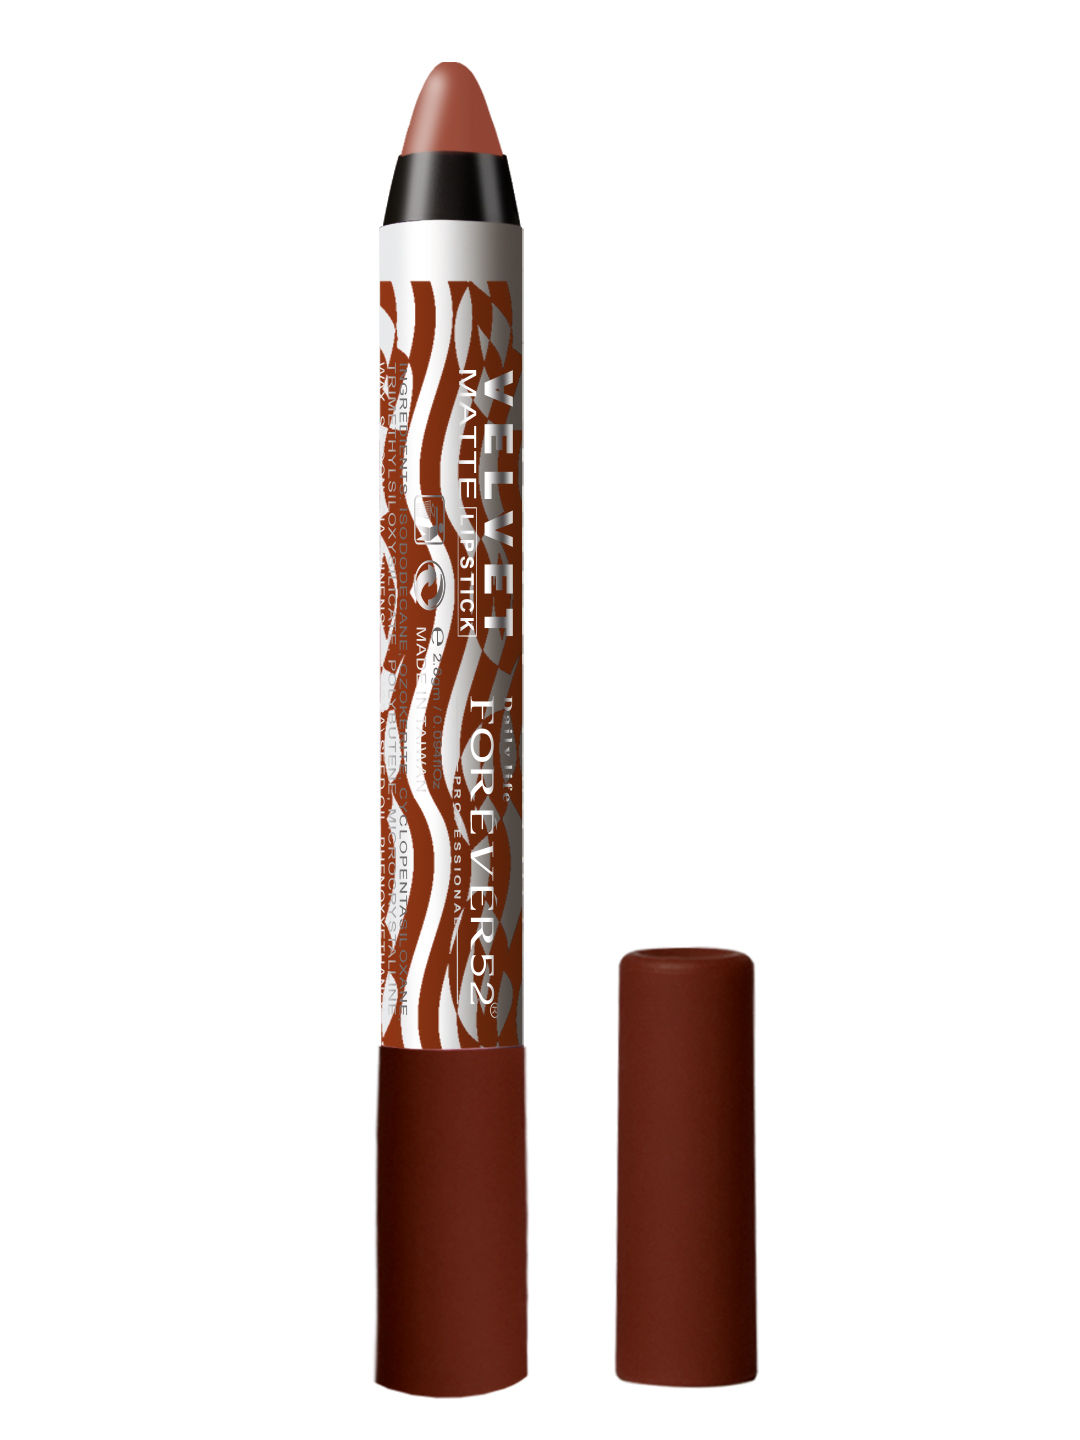 Buy Daily Life Forever52 Valvet Matte Lipstick FT023 (2.8gm) - Purplle